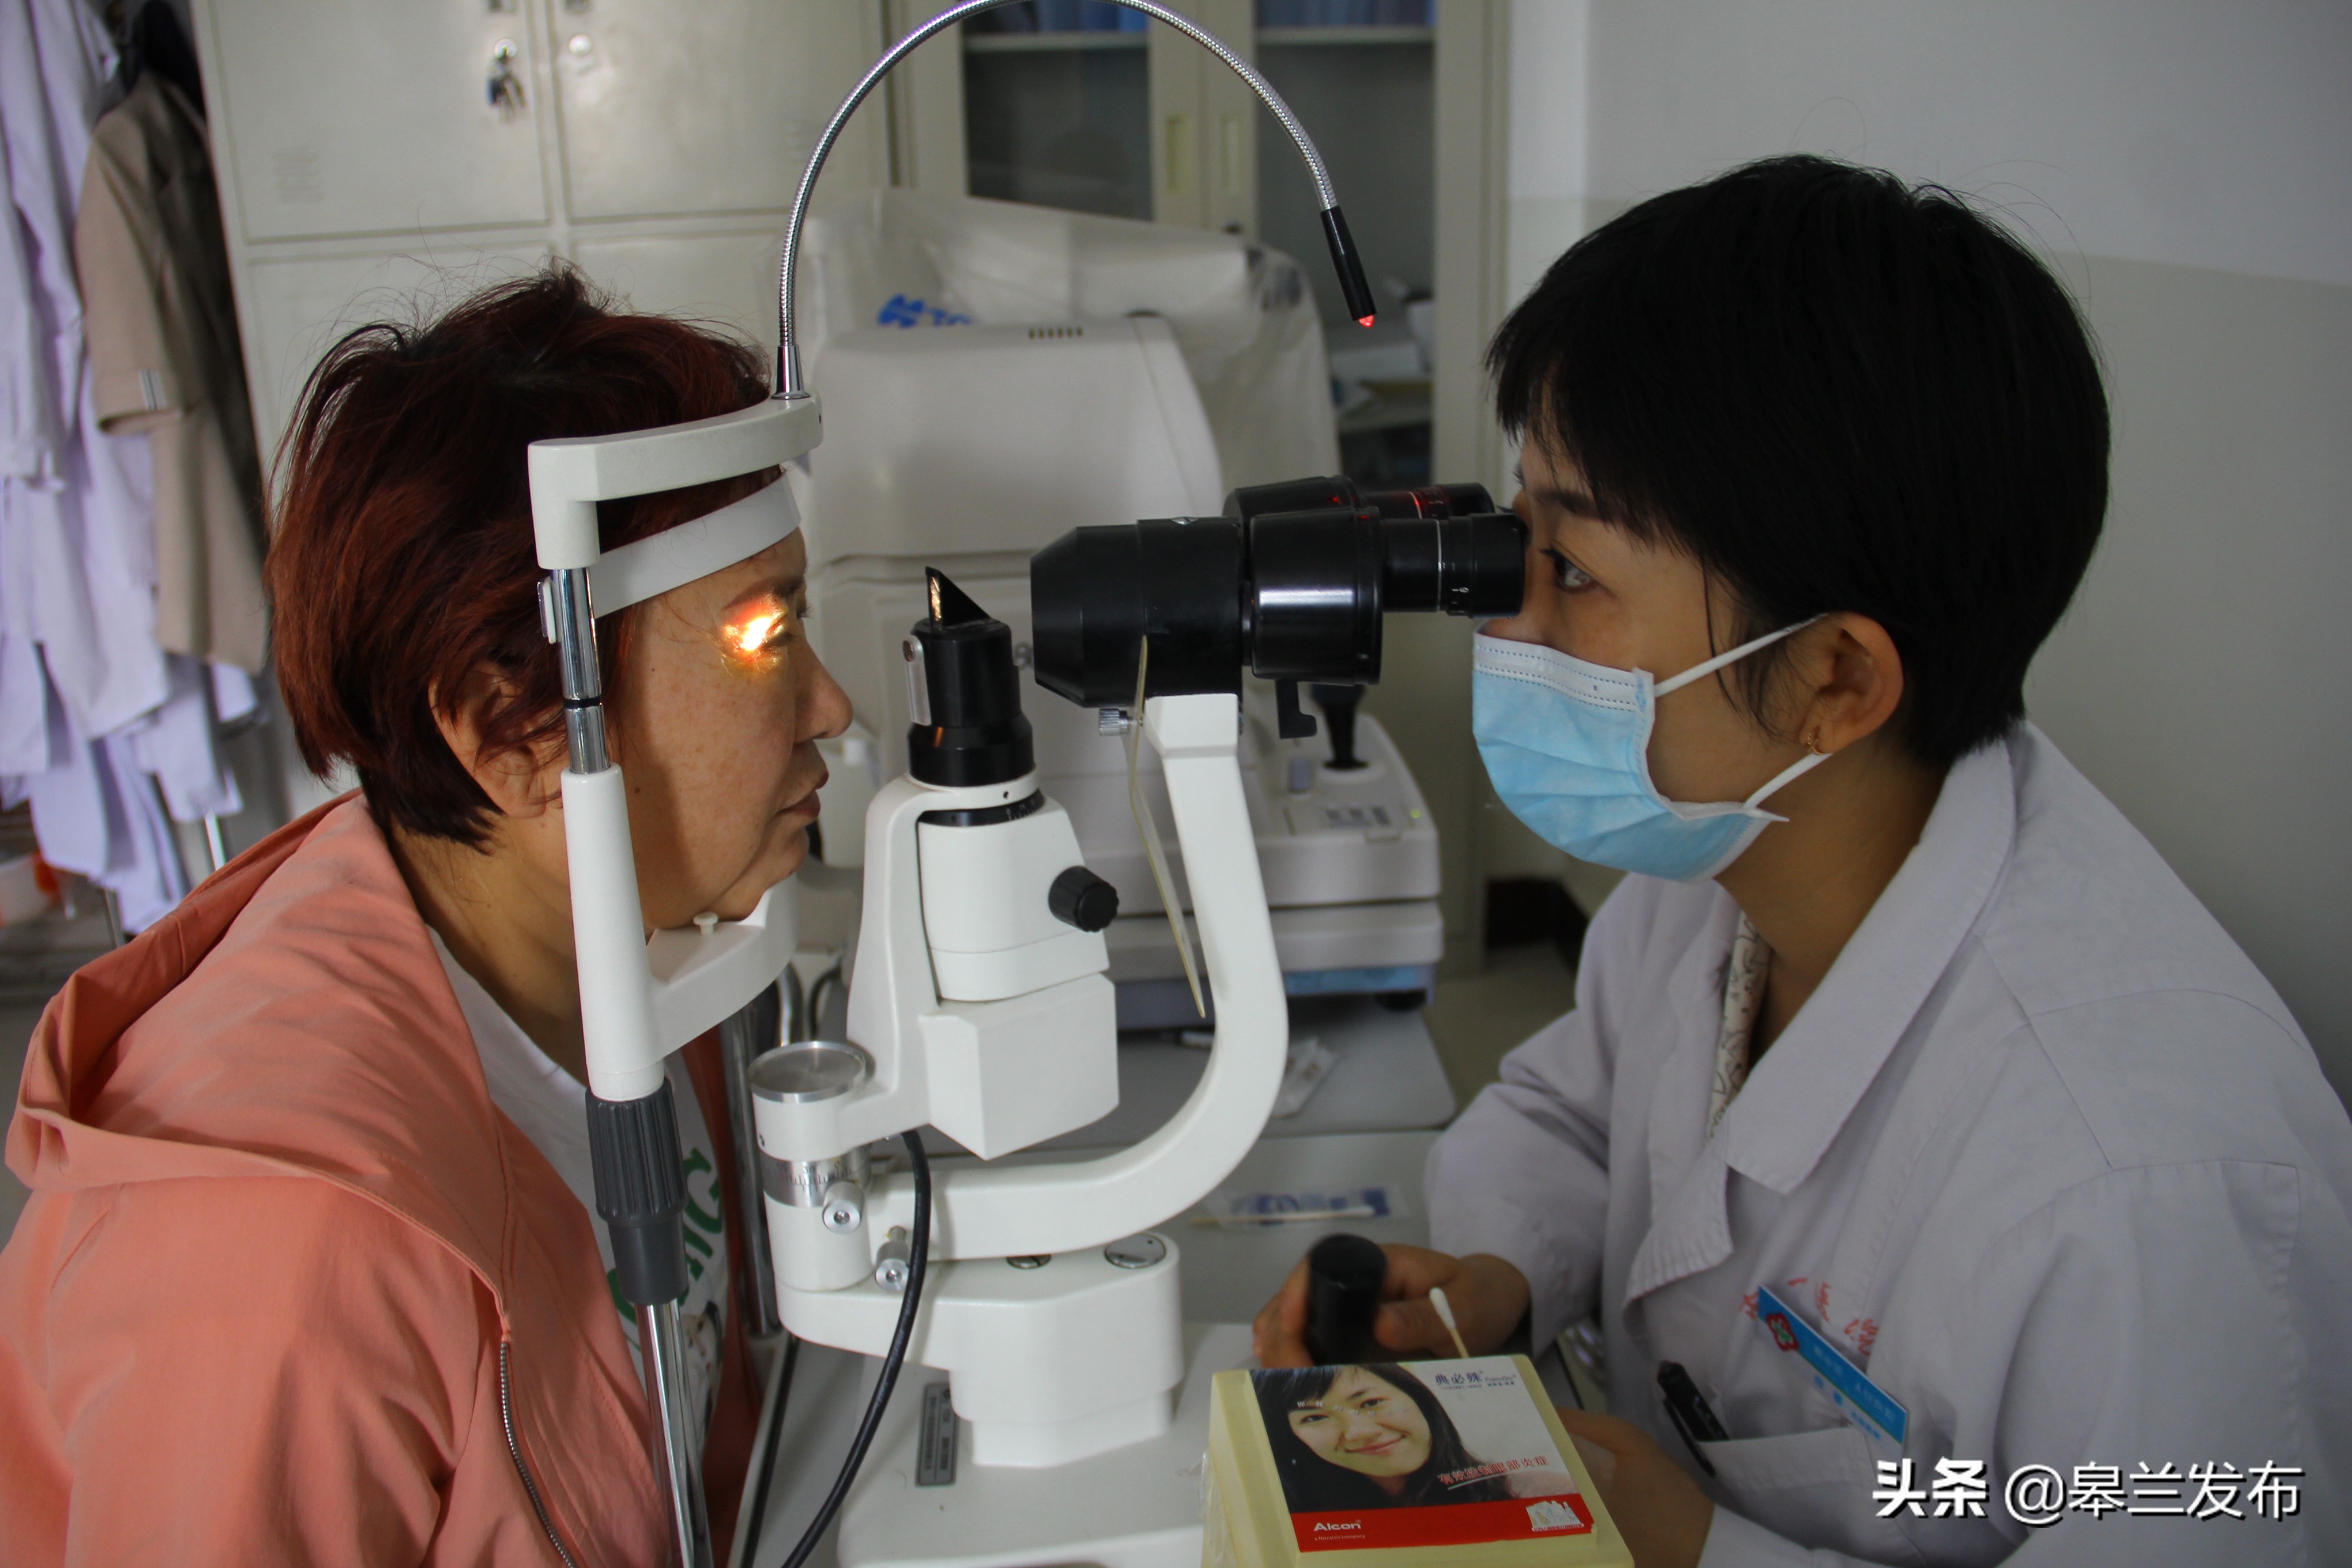 皋兰县人民医院开展多项眼部疾病诊断治疗新技术